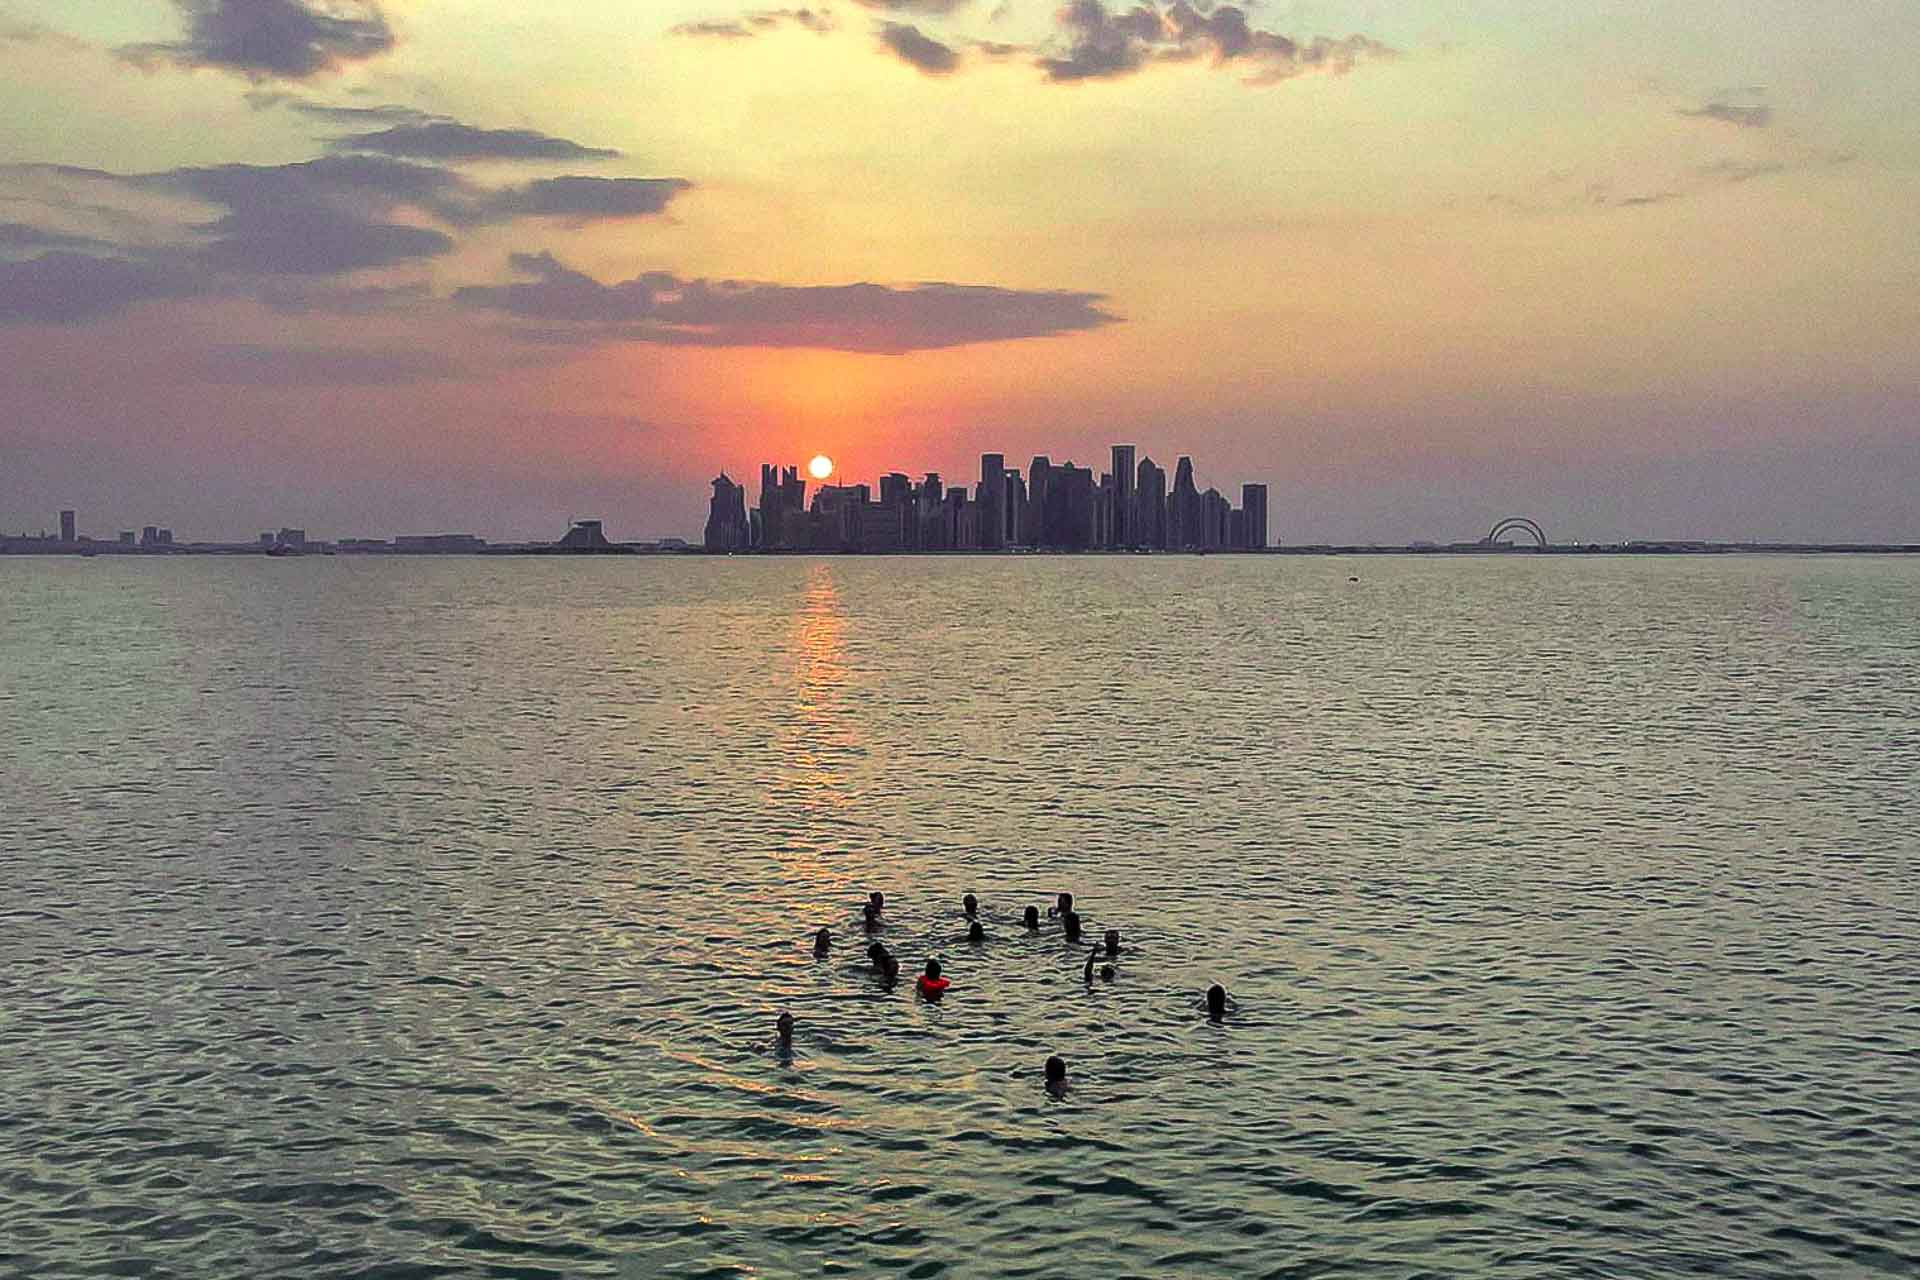 Vista panorâmica do mar da cidade de Doha com um grupo de pessoas na agua e o sol se pondo atras dos prédios altos da cidade